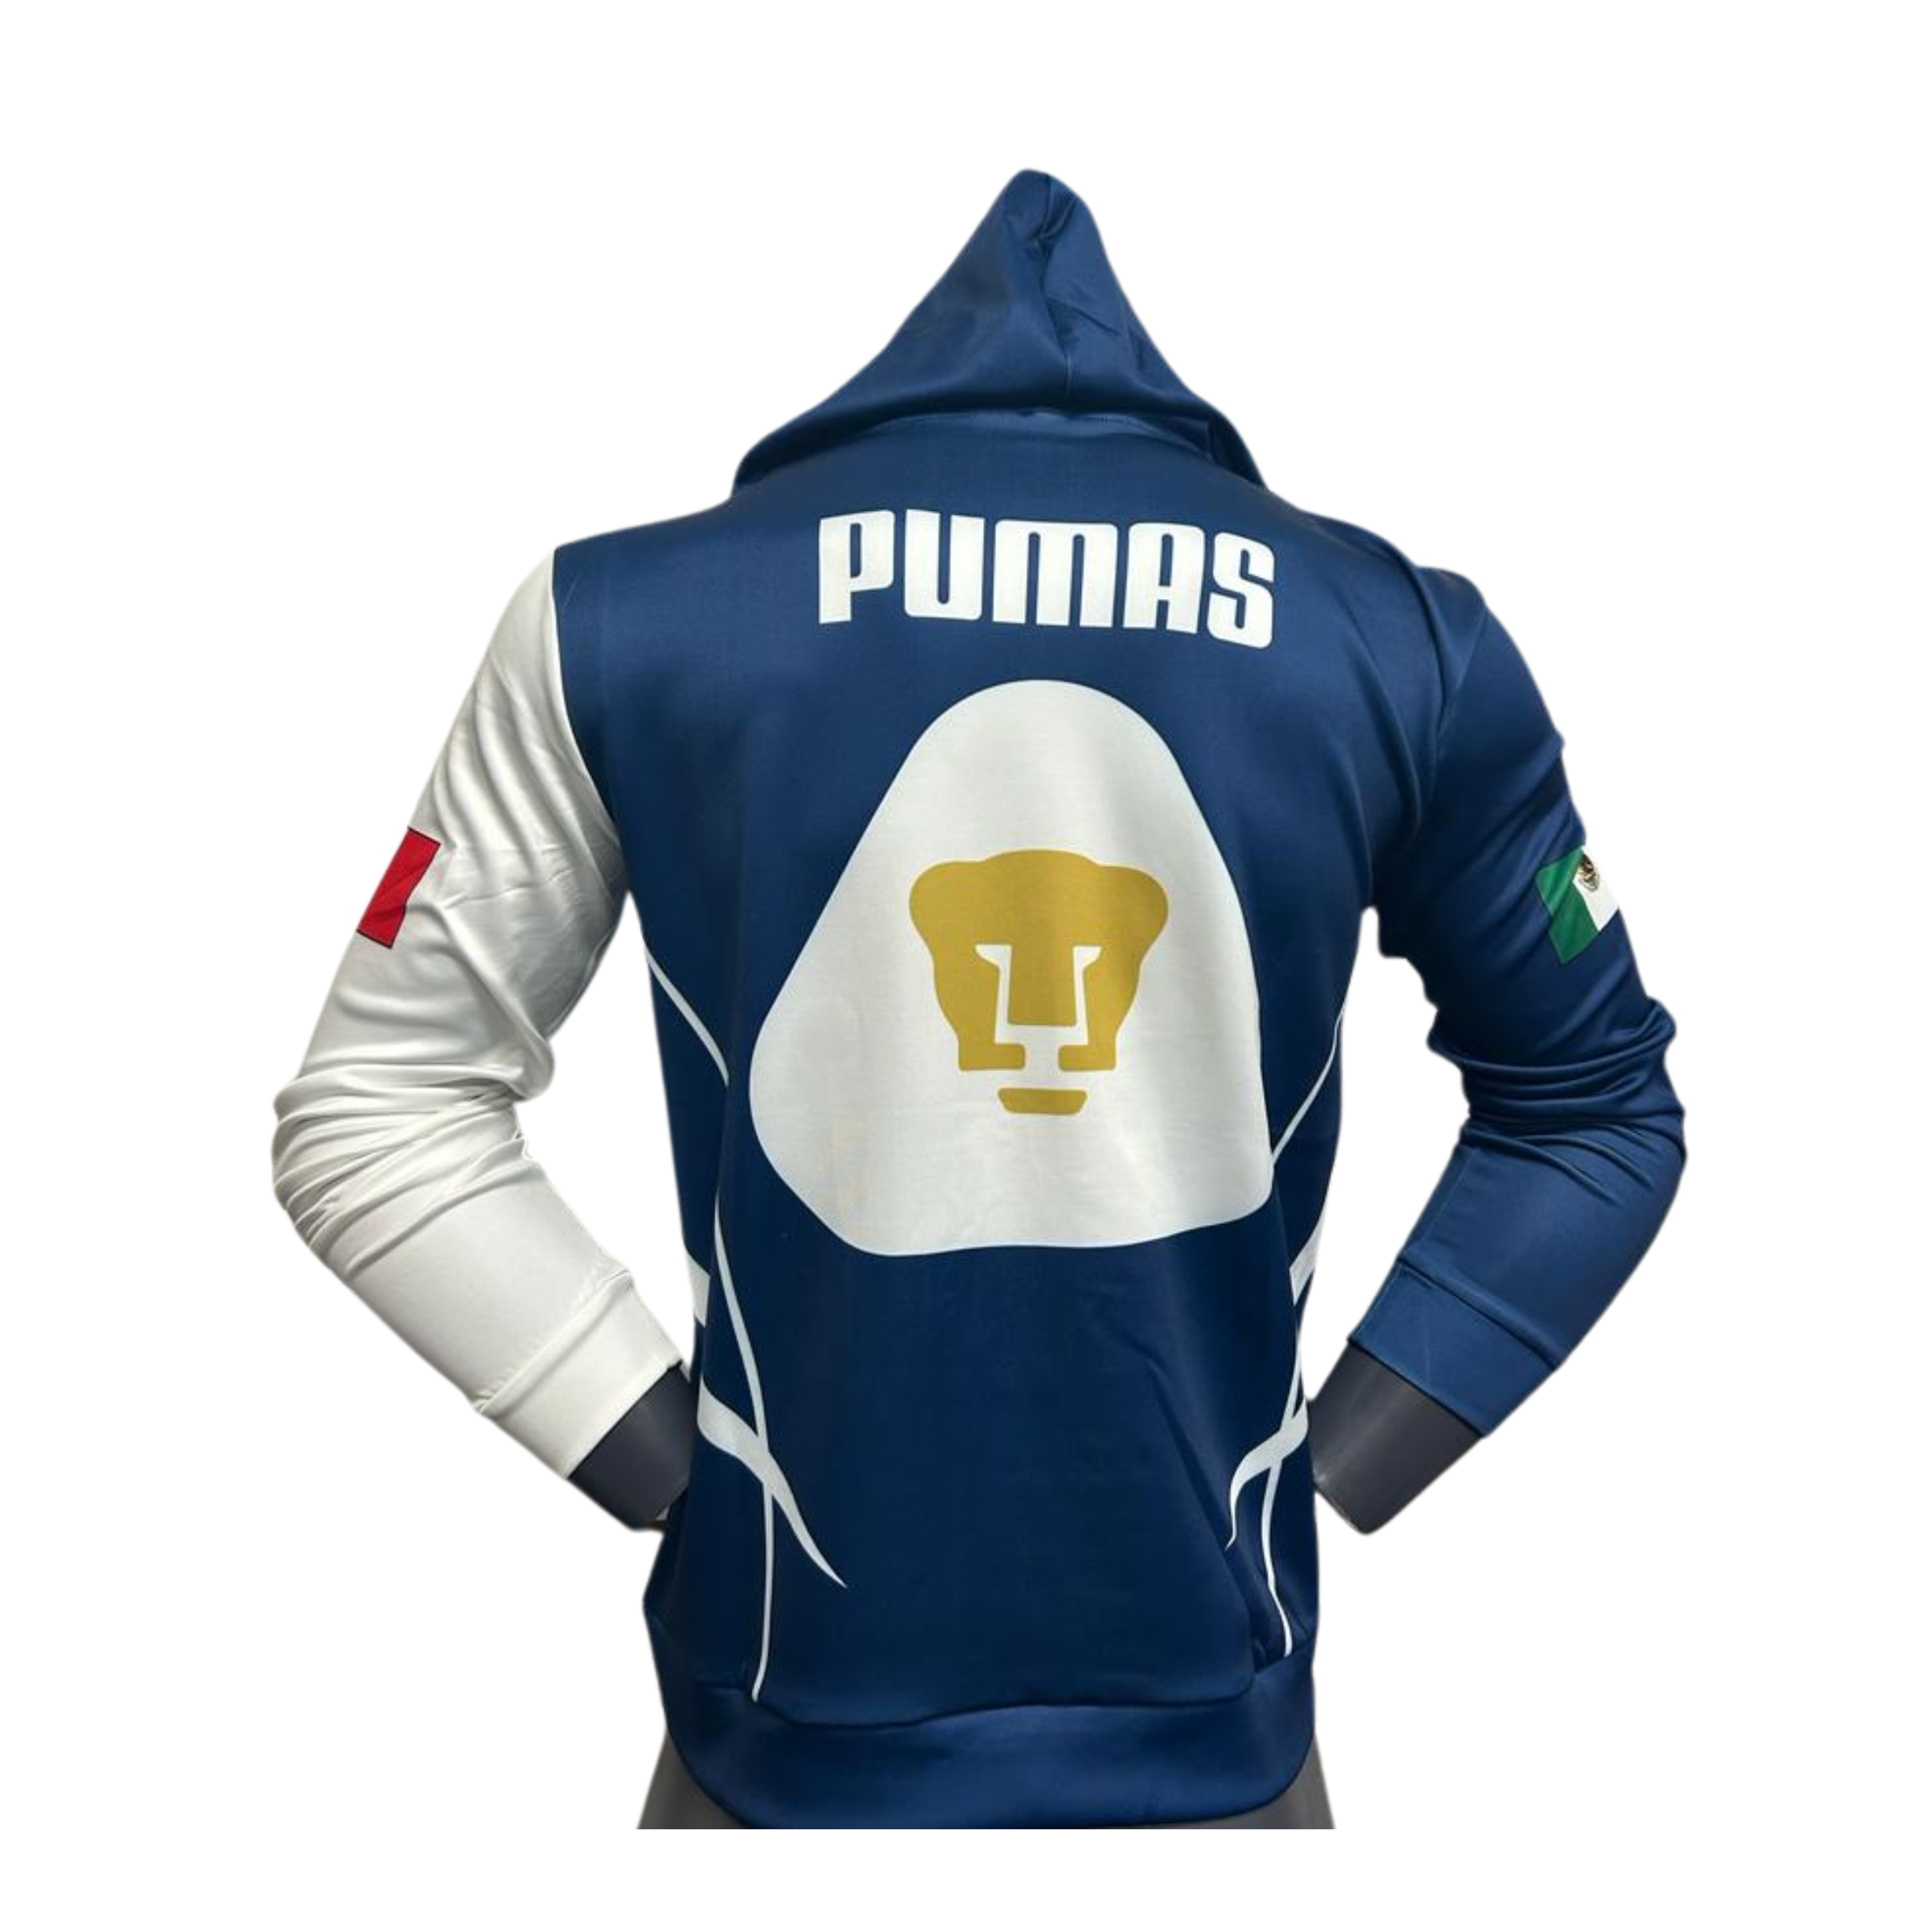 Pumas Sweater